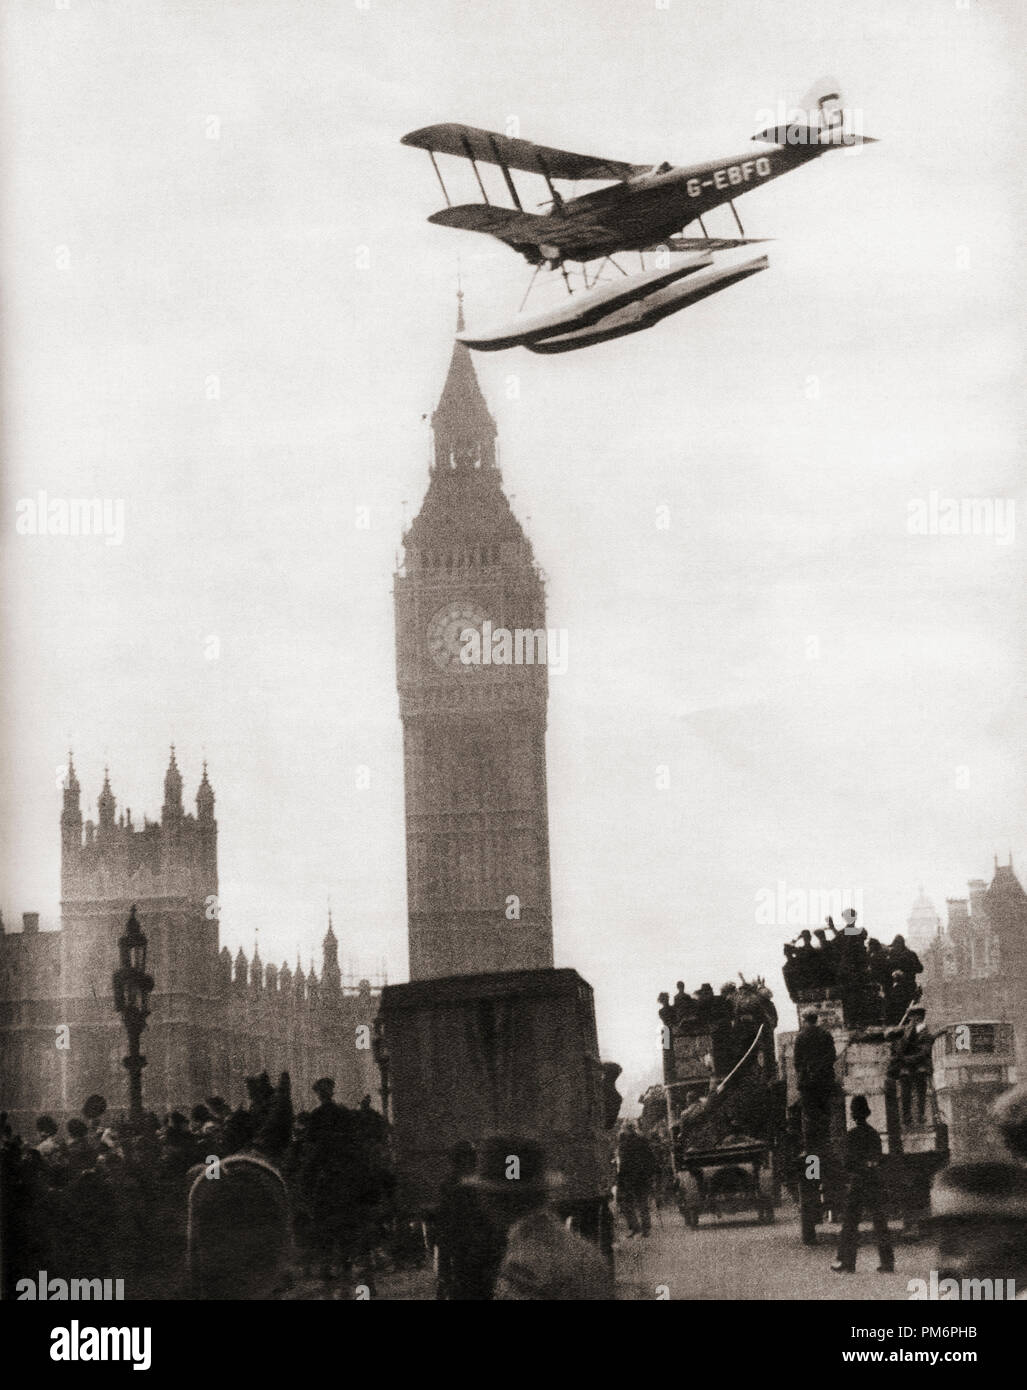 Alan Cobham en venant à la terre sur la Tamise à Londres dans son de Havilland DH.50J d'un hydravion après un vol vers l'Australie et à l'arrière en 1926. À partir de ces années, publié en 1938. Banque D'Images